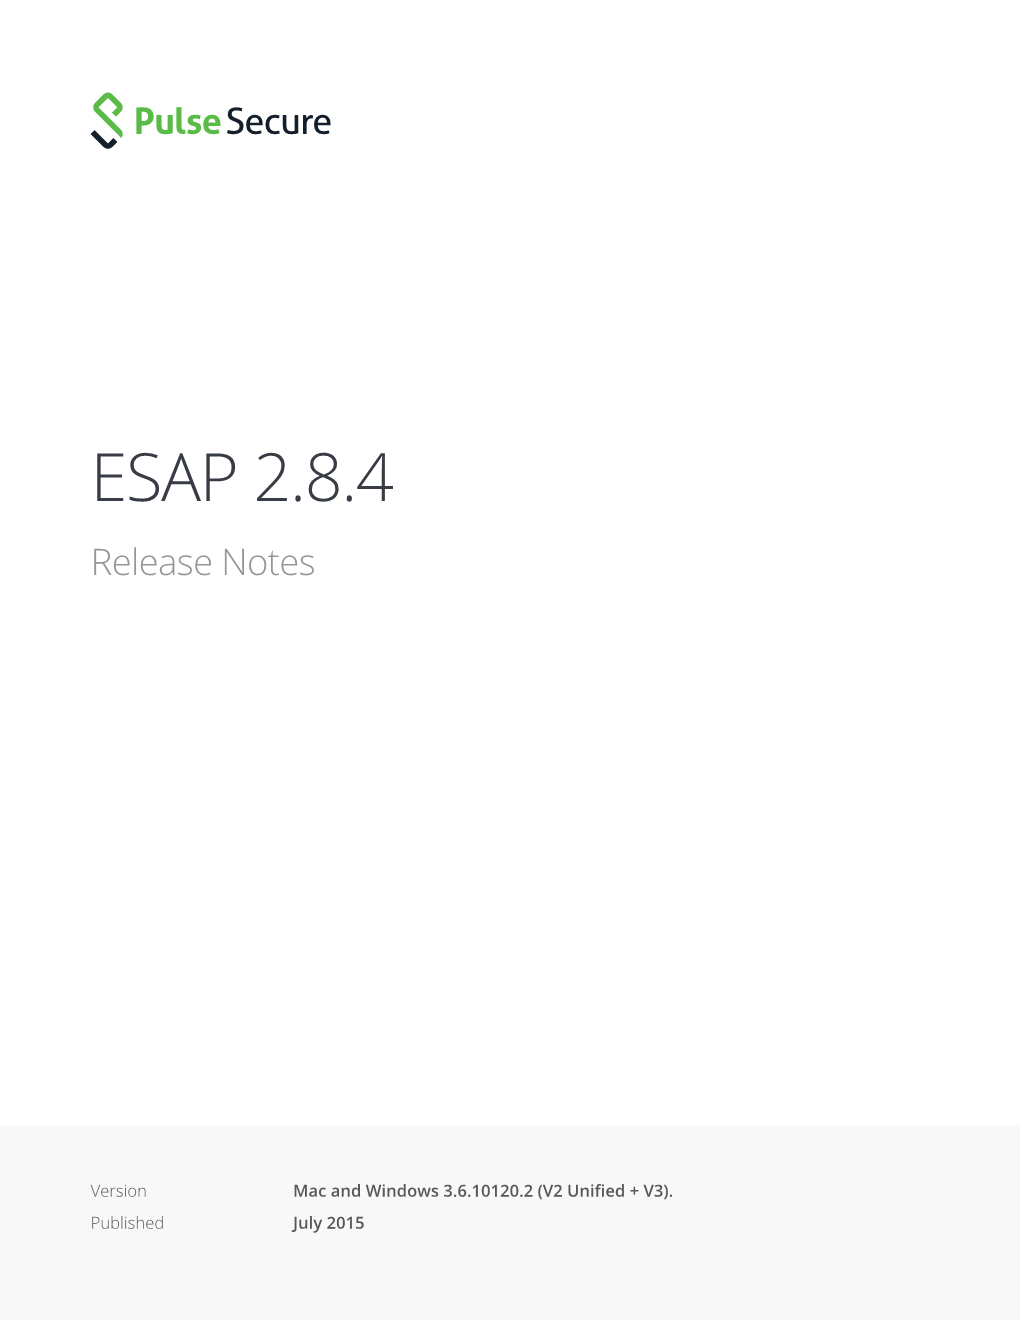 ESAP 2.8.4 Release Notes